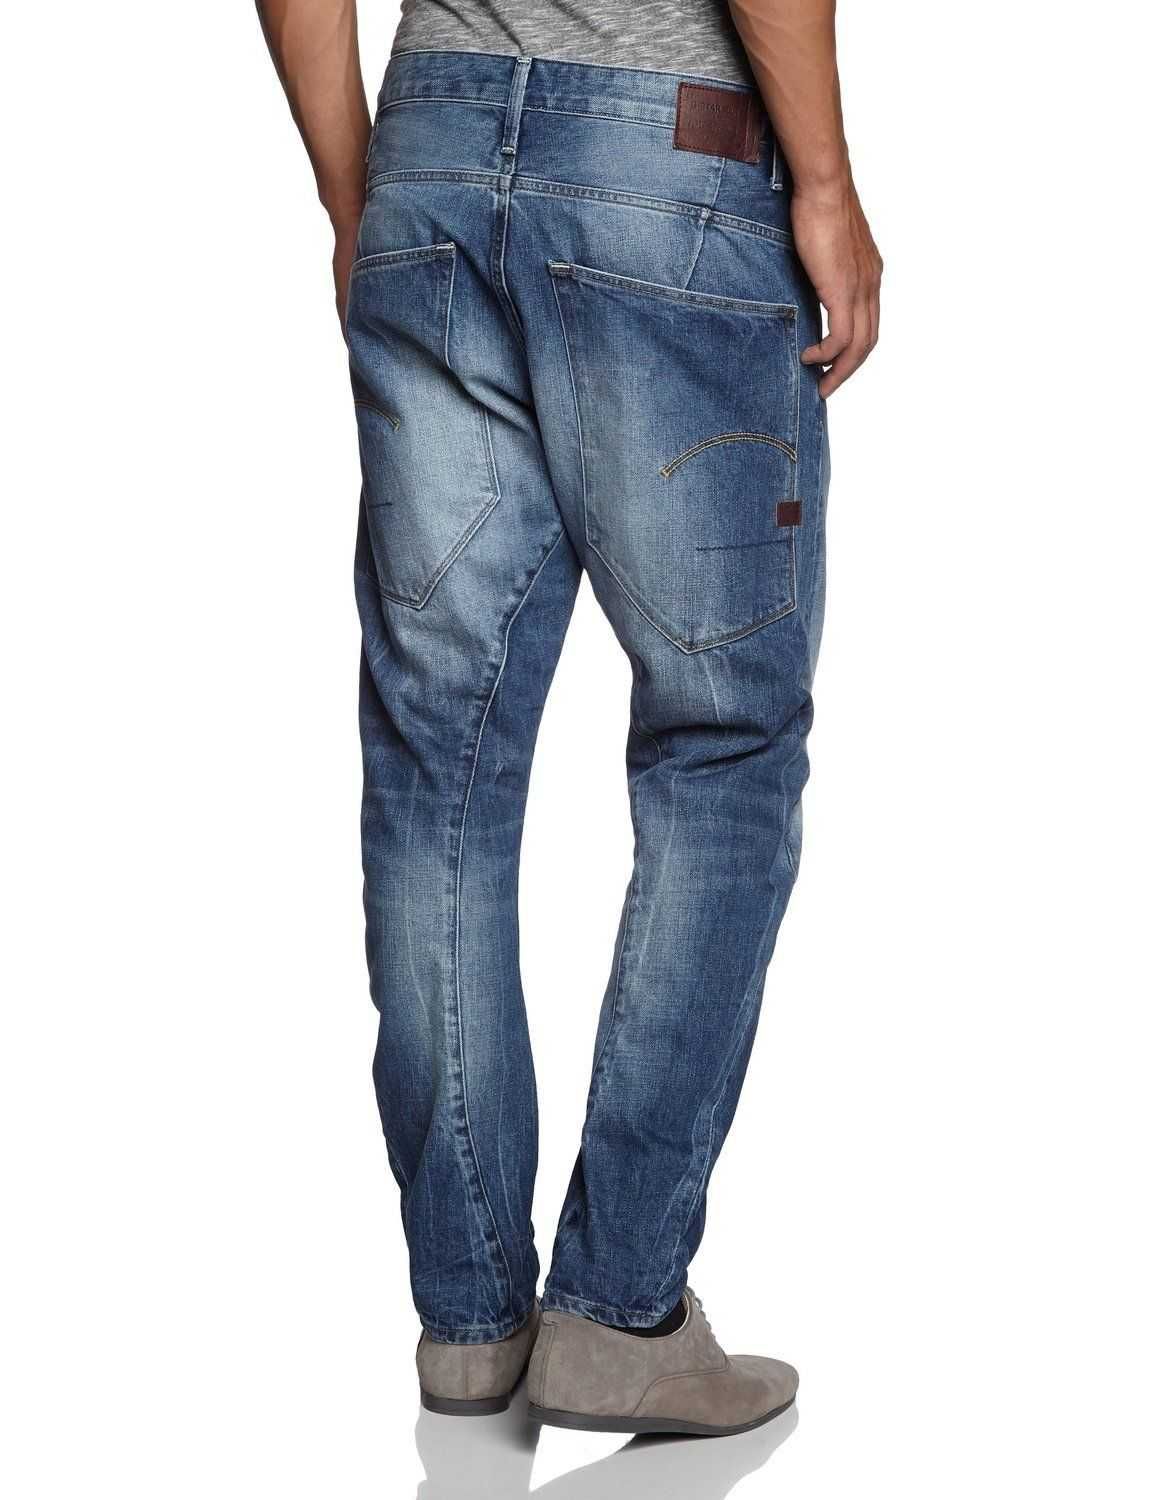 Spodnie Męskie jeans G-Star Nuke W30 L30 NOWE!